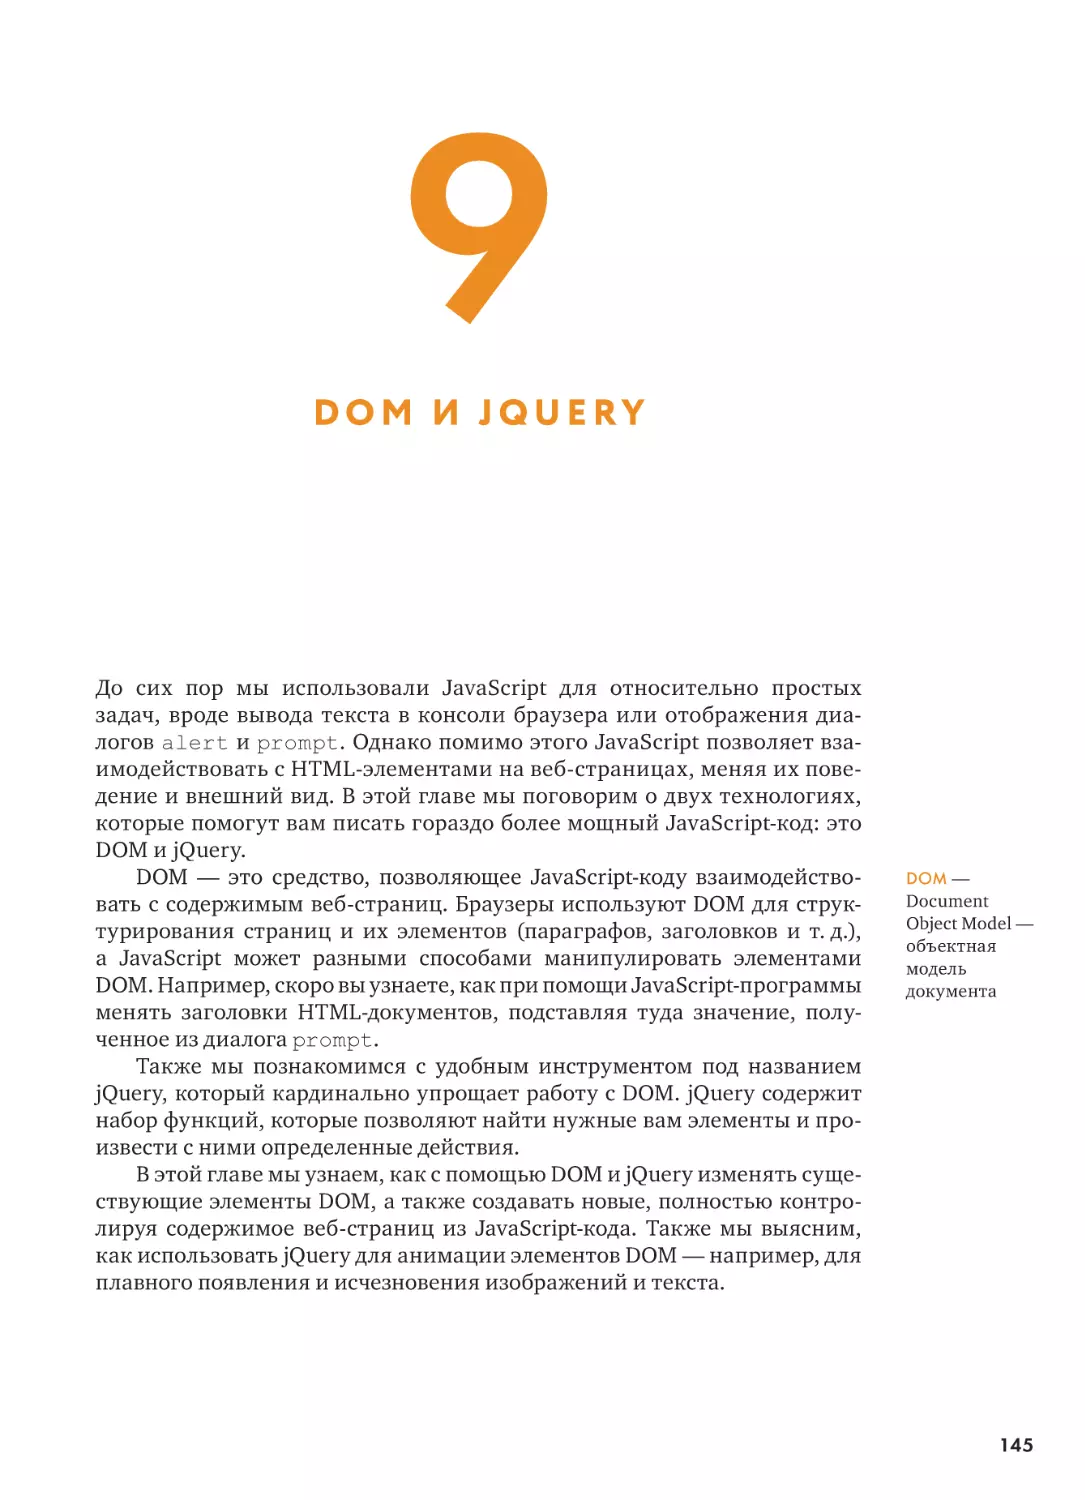 9. DOM И JQUERY